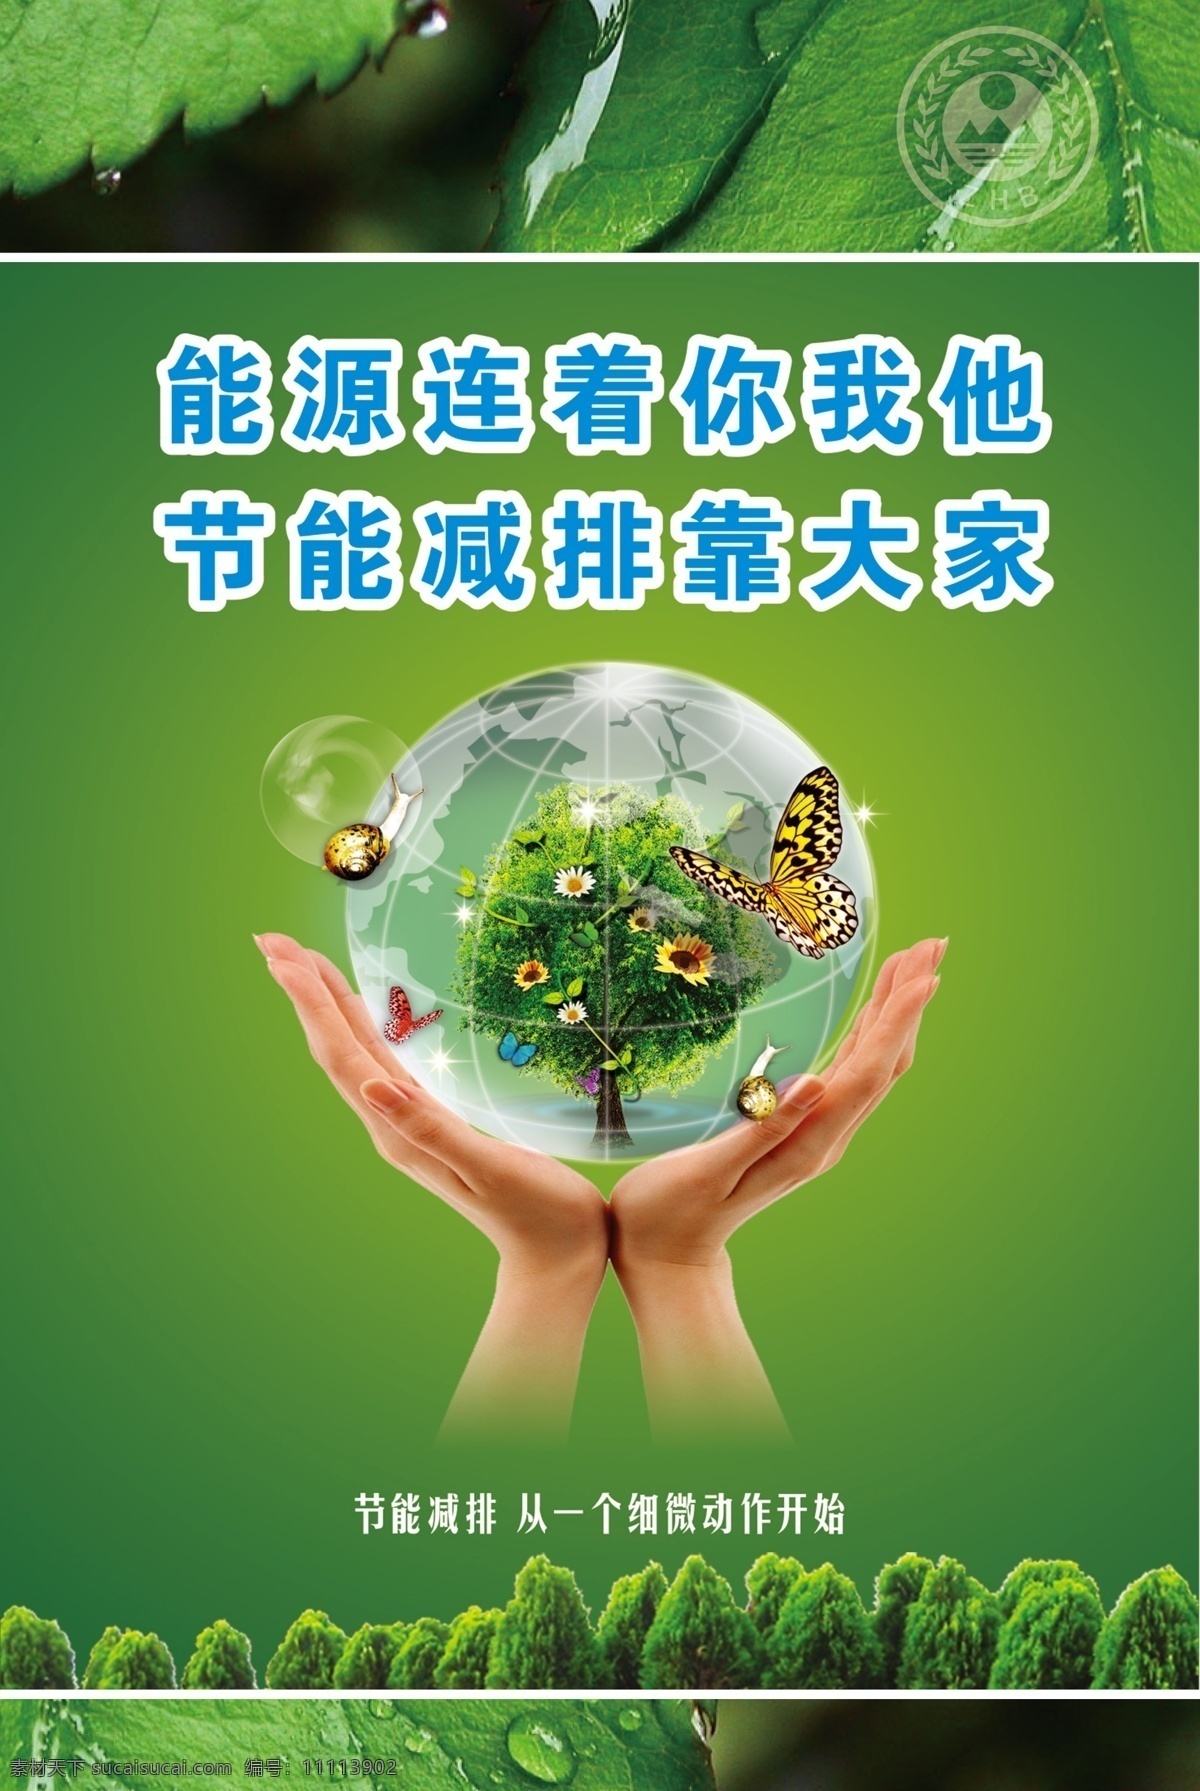 环保 生态 宣传 系列 海报 生态文明 绿色家园 绿色出行 绿色 树叶 水珠 水滴 节能 广告设计模板 源文件